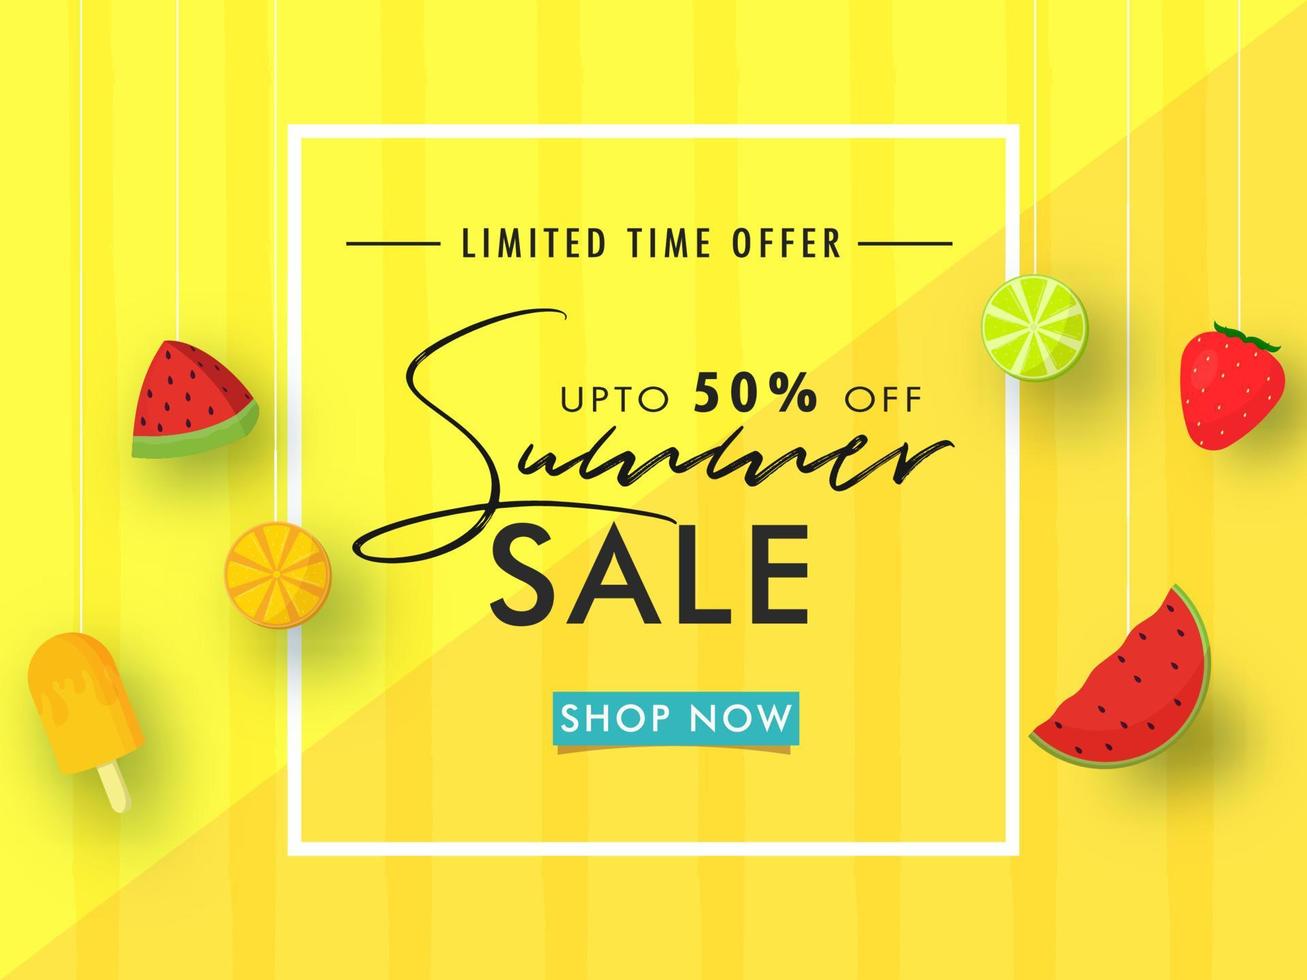 sommar försäljning affisch design med rabatt erbjudande hängande vattenmelon skiva, citron, jordgubb och is grädde dekorerad på gul randig bakgrund. vektor